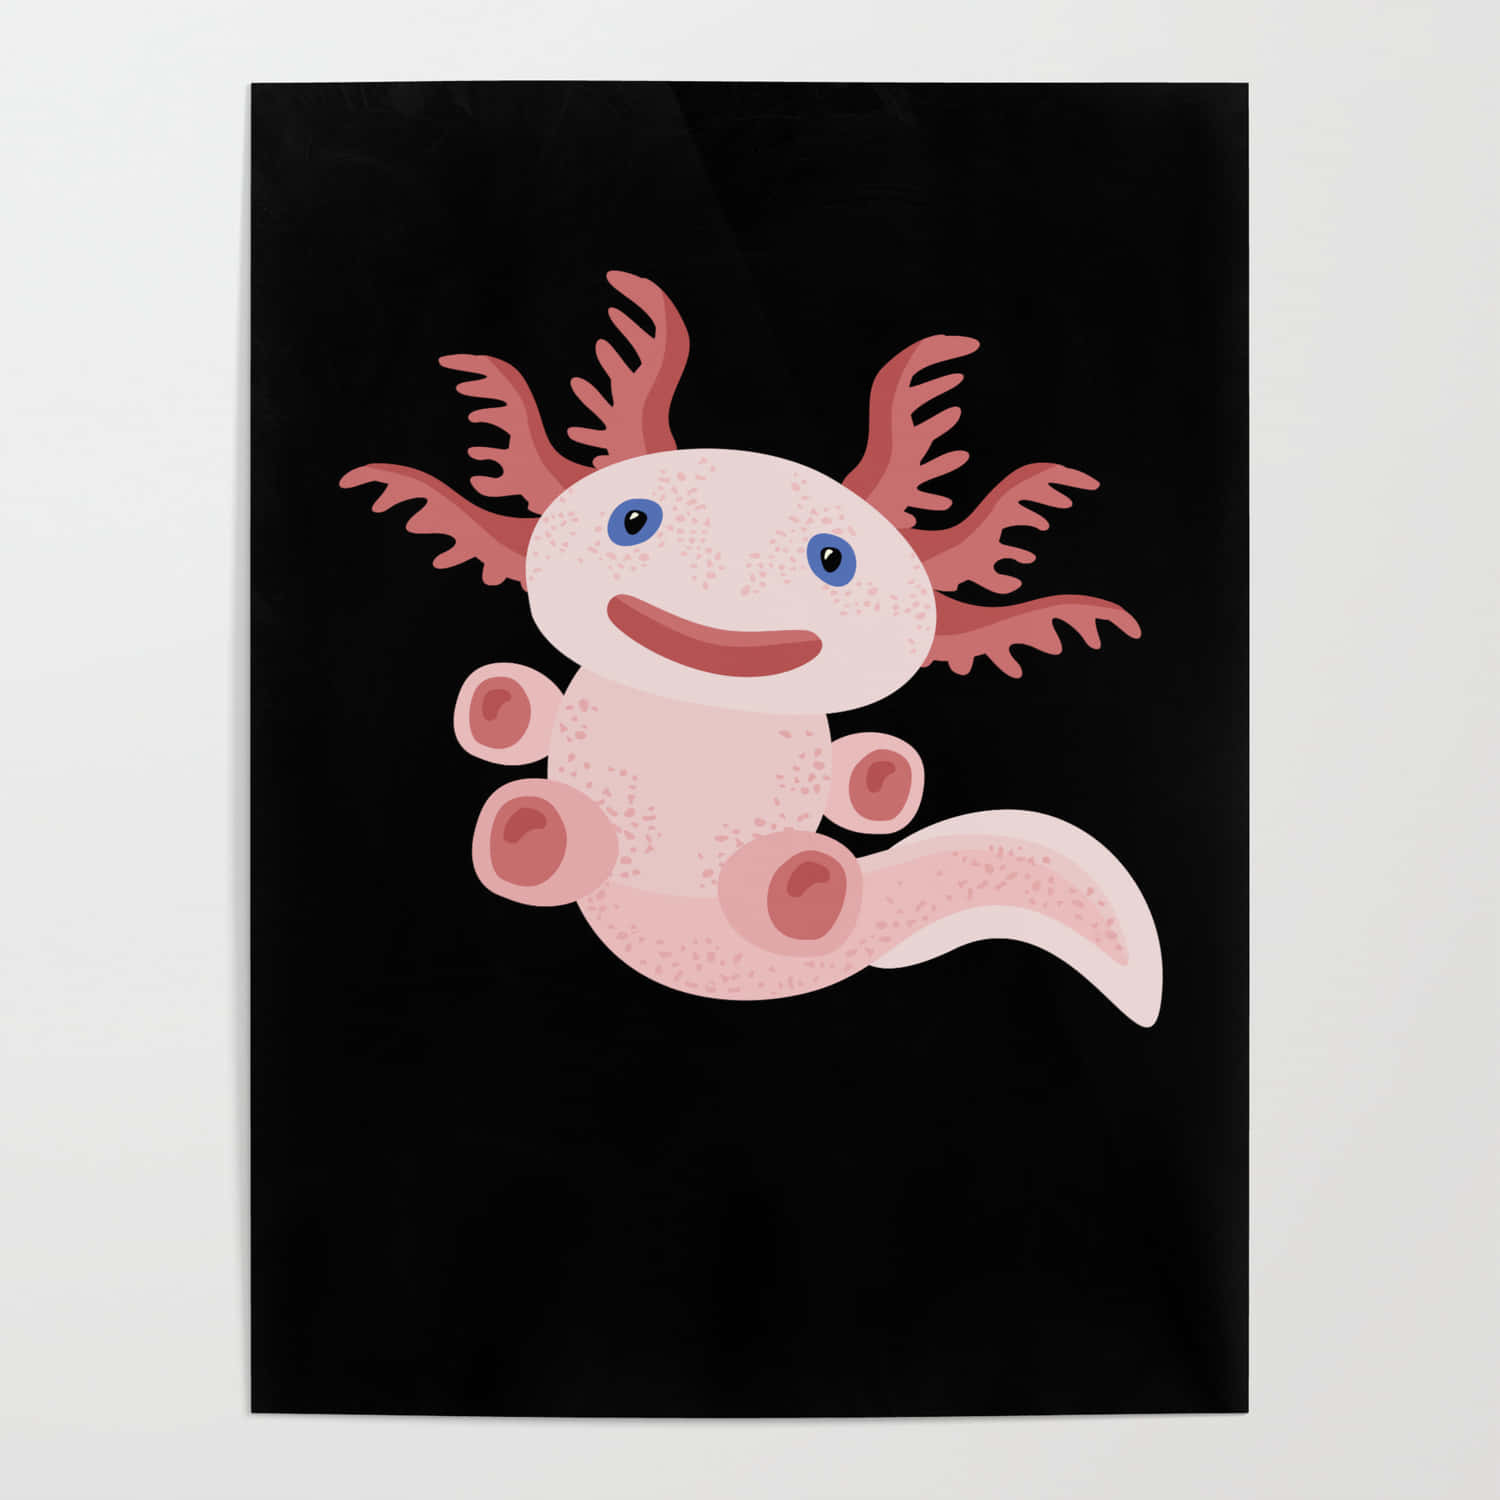 Niedrigesdigitales Gemälde Eines Süßen Axolotls. Wallpaper